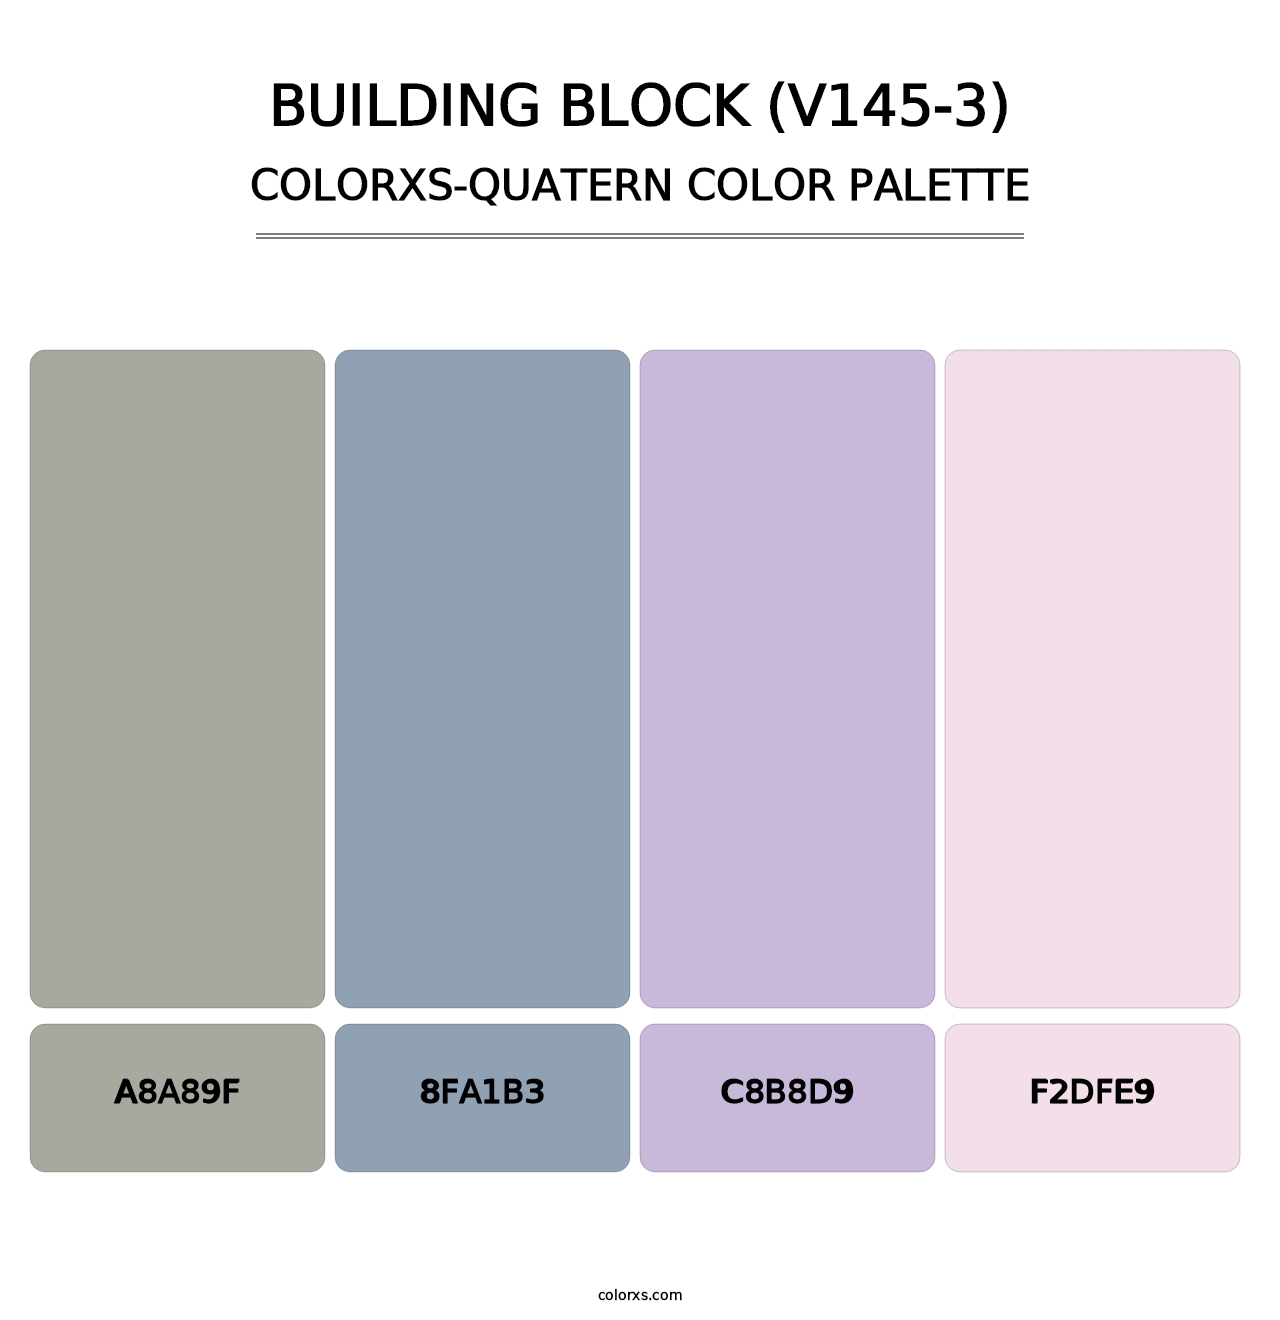 Building Block (V145-3) - Colorxs Quatern Palette